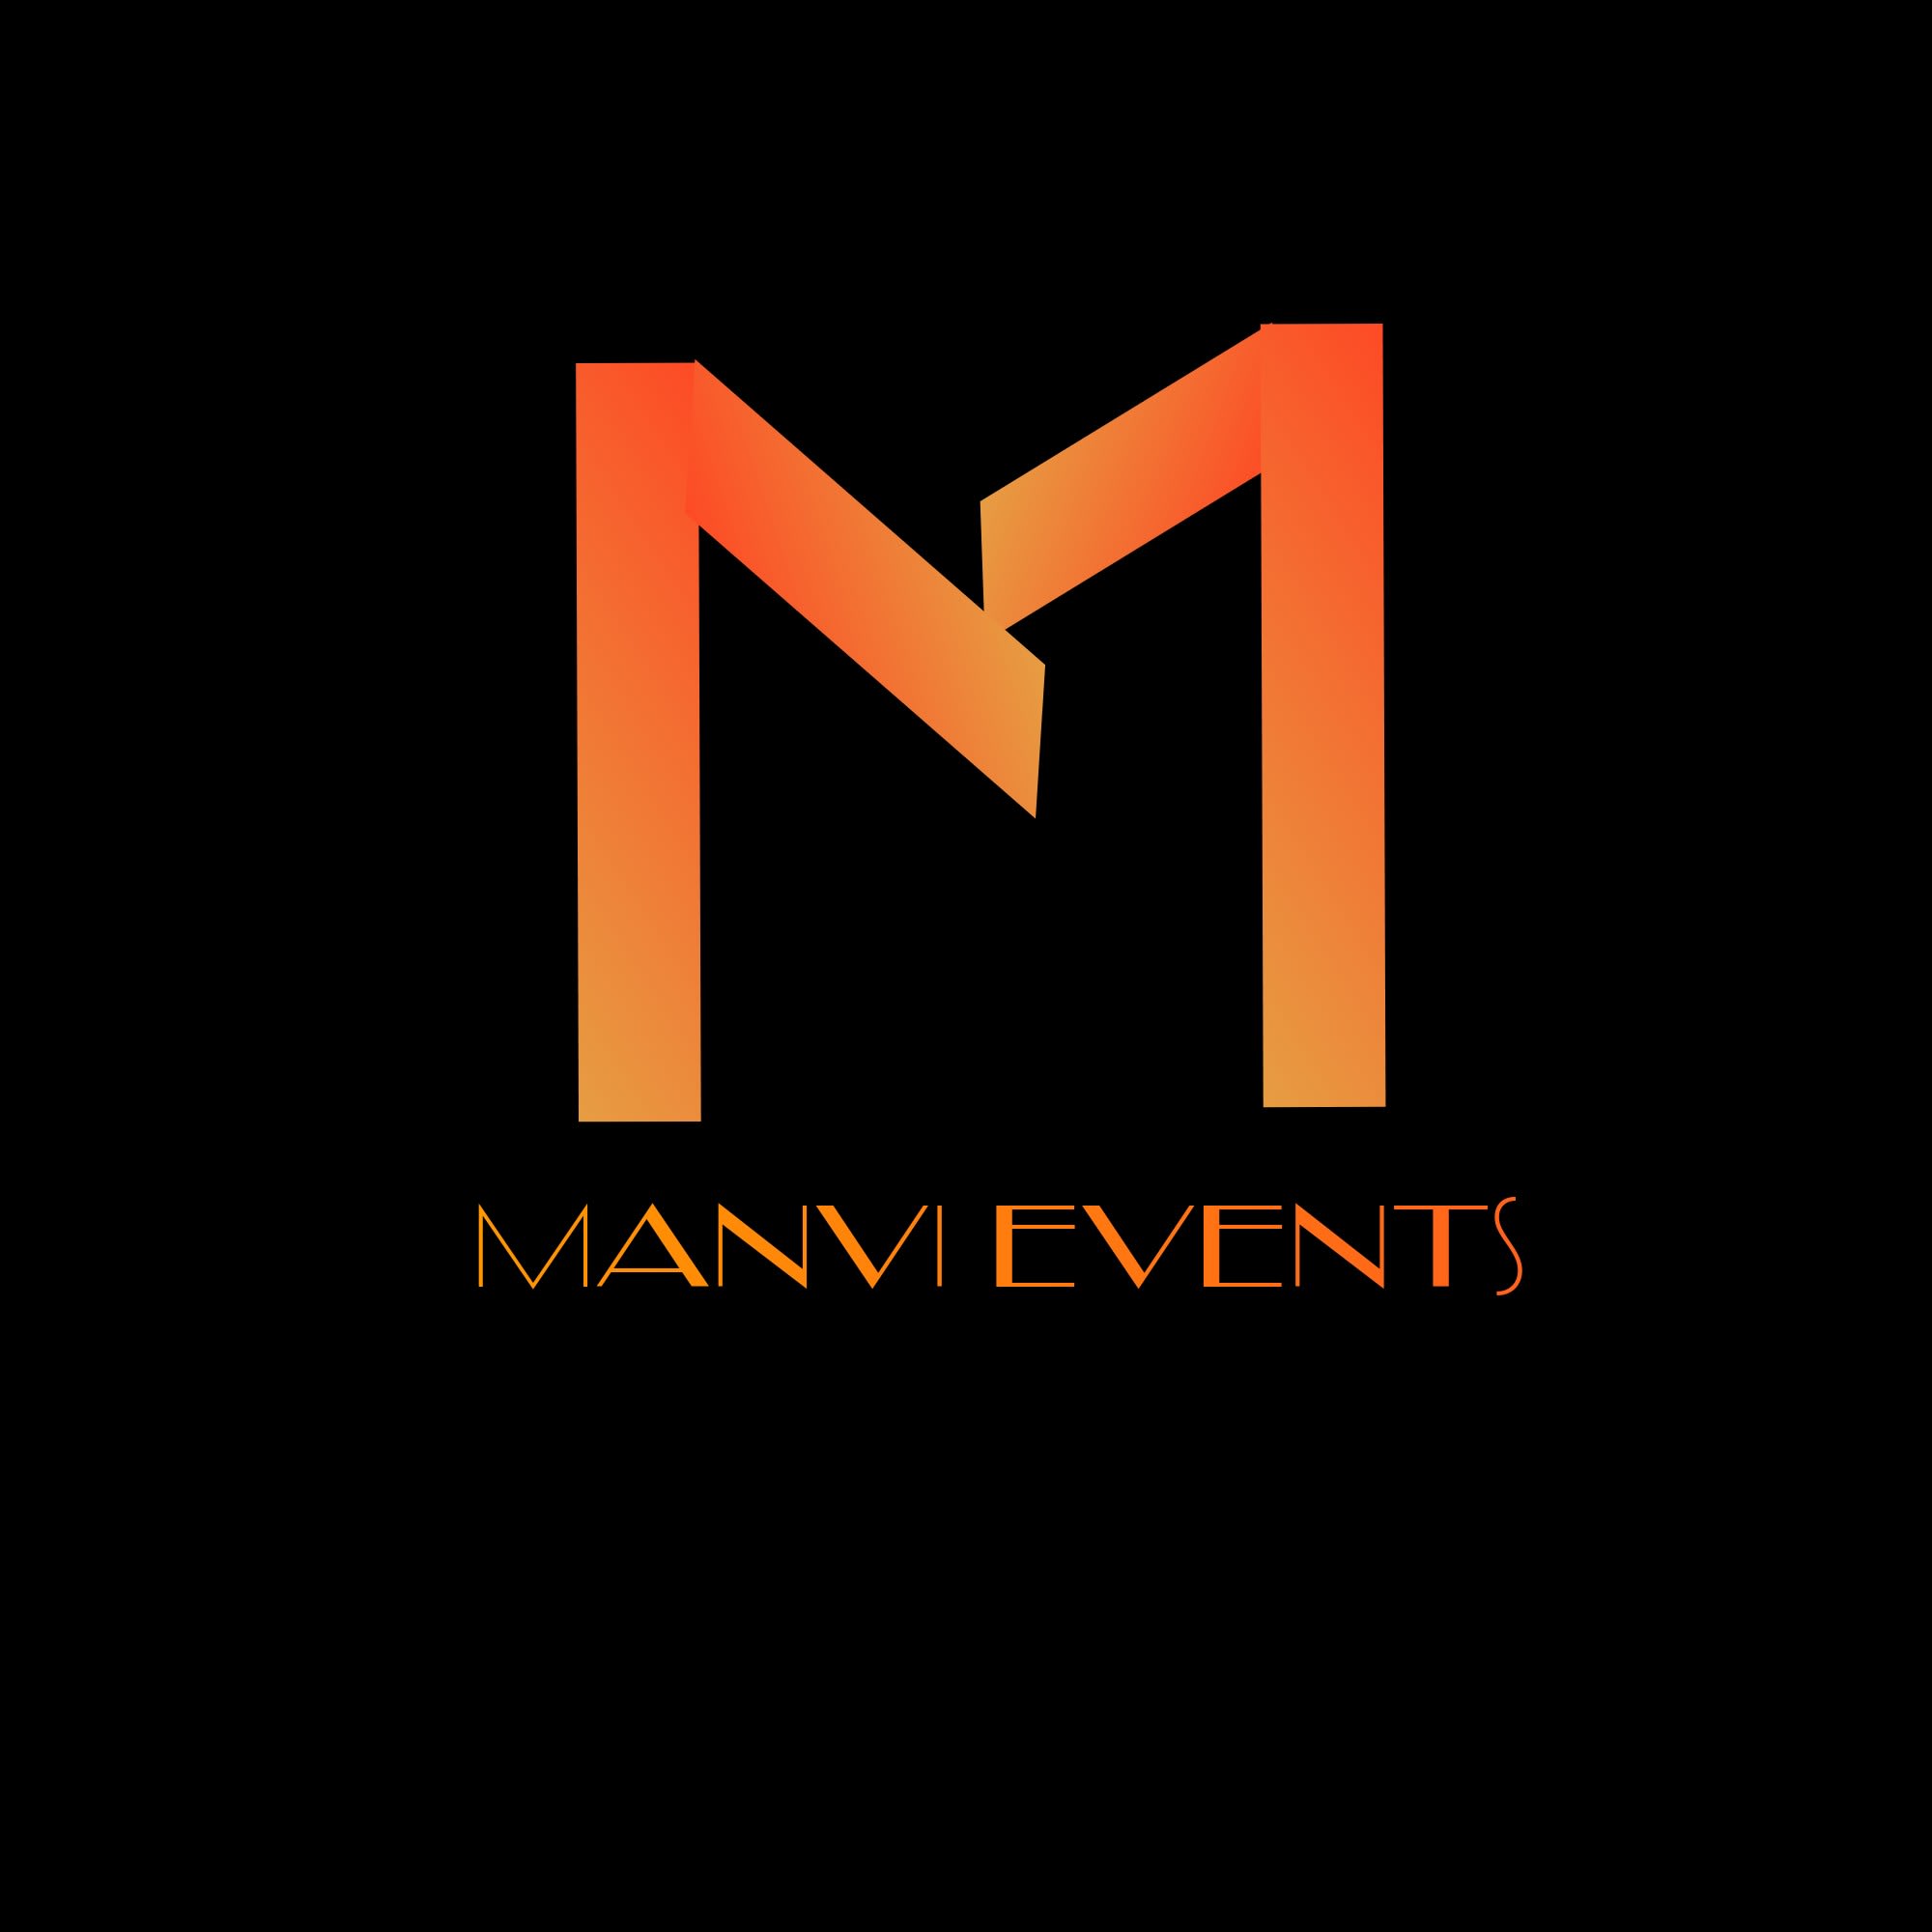 Manvi Events